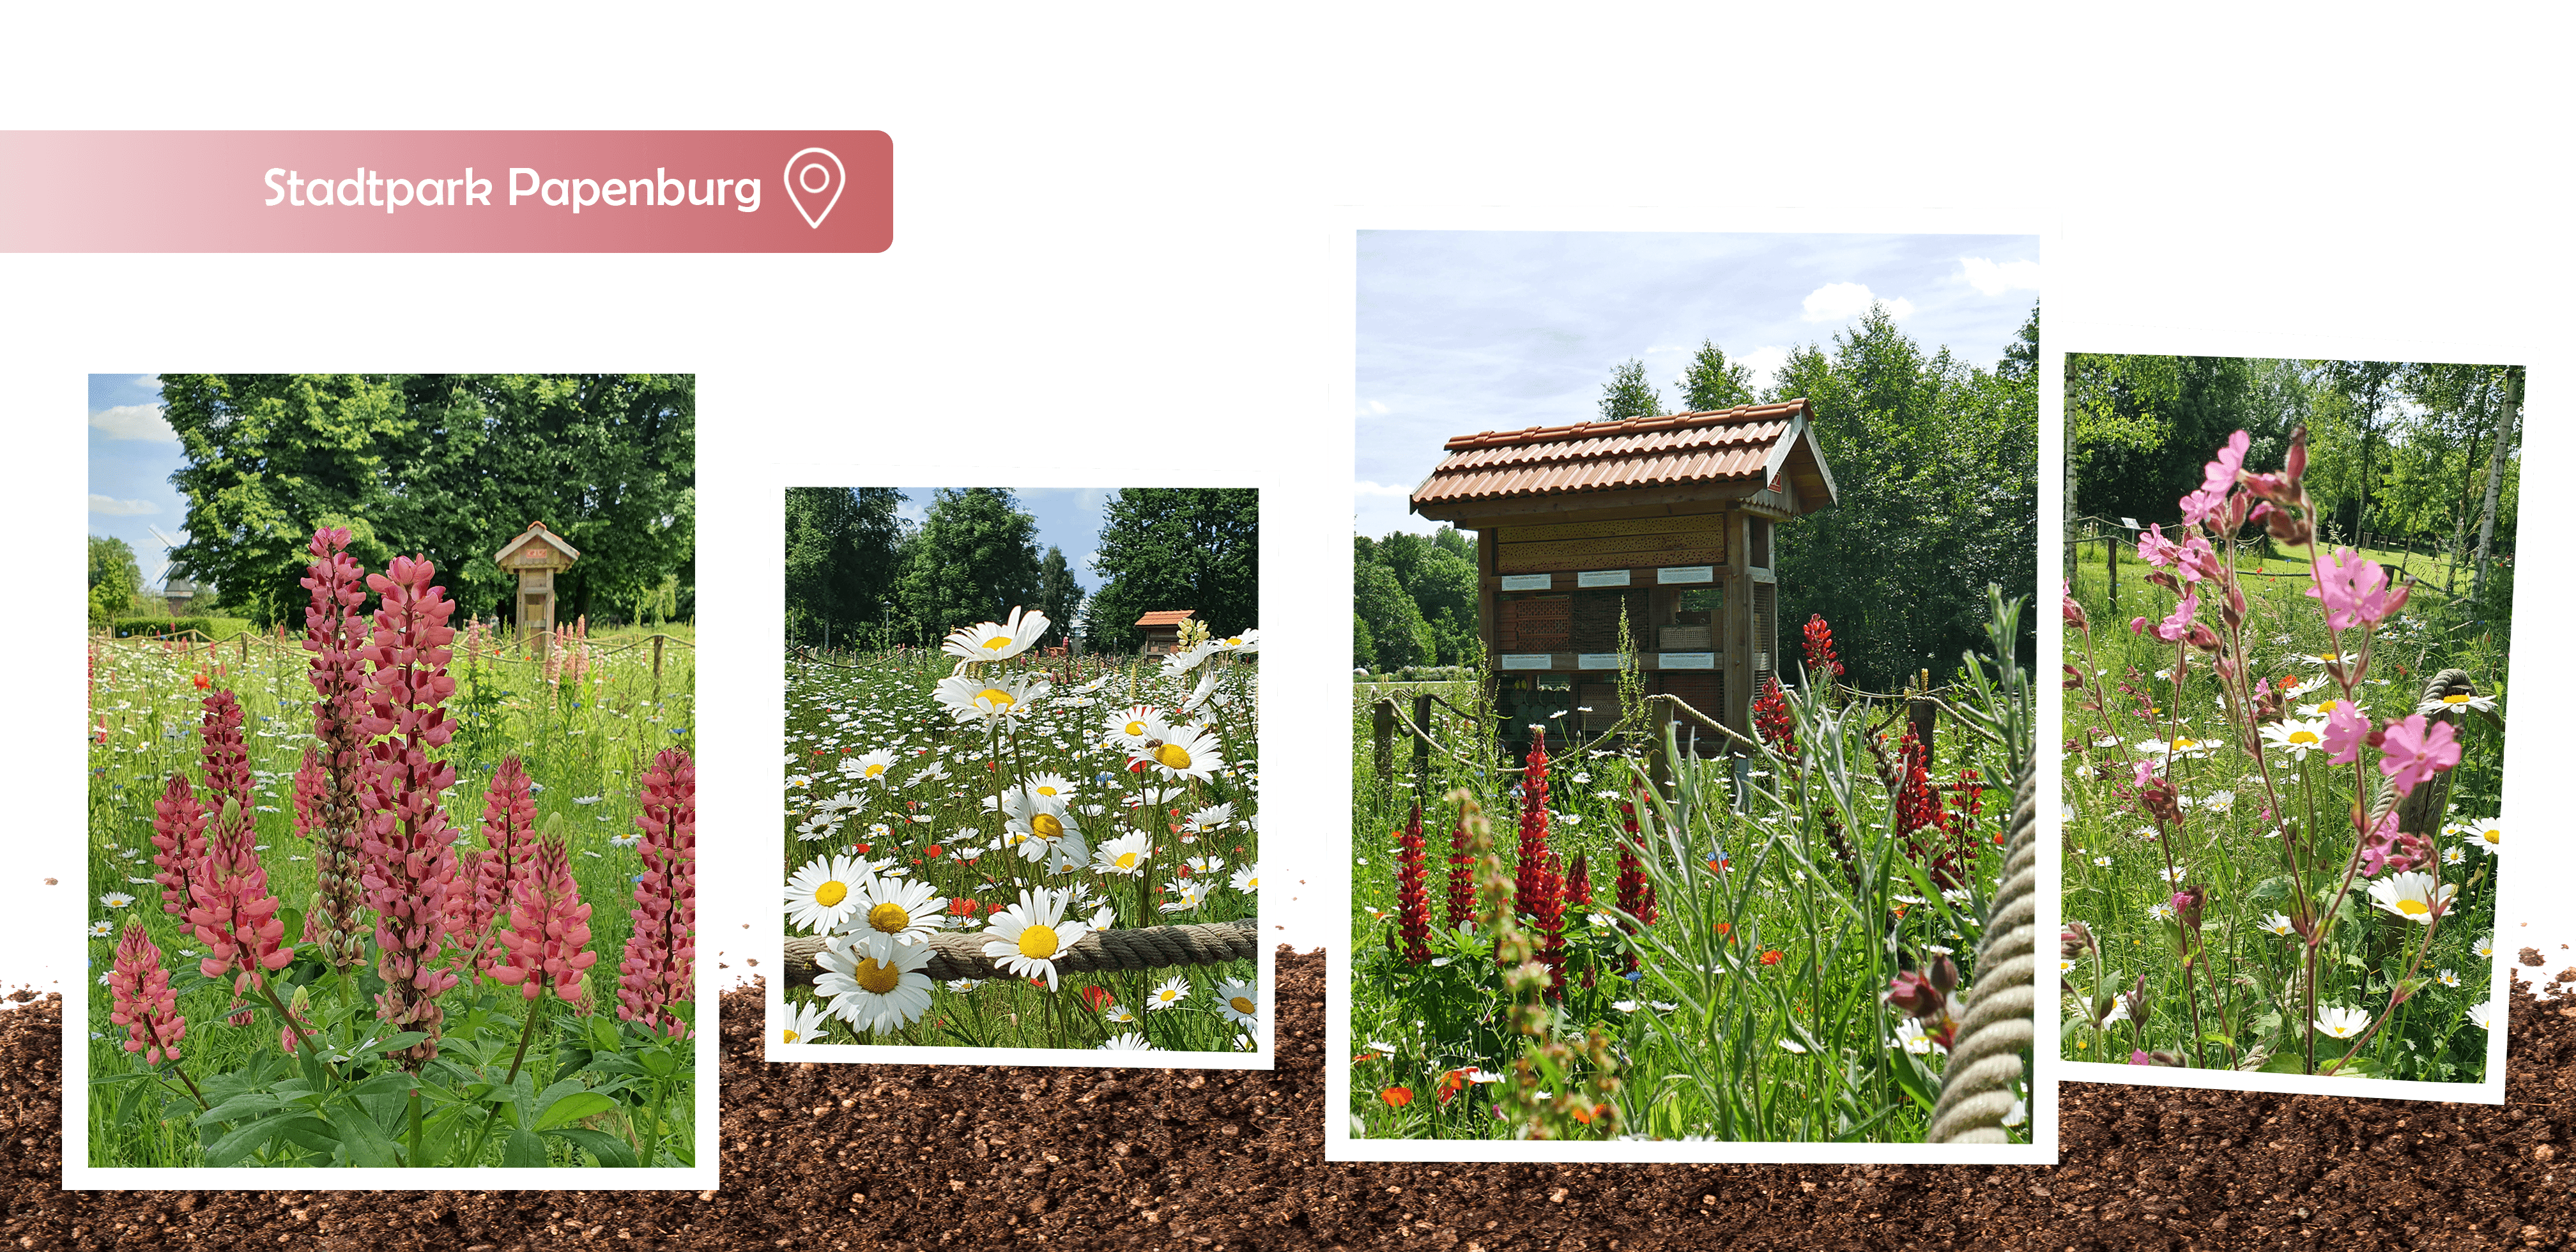 Stadtpark Papenburg, Wildblumenwiese, Blühwiese, Gartenbauzentrale, Papenburg, insektenfreundlich, Insektenhotel, GBZ, Umwelt, Naturschutz, Engagement